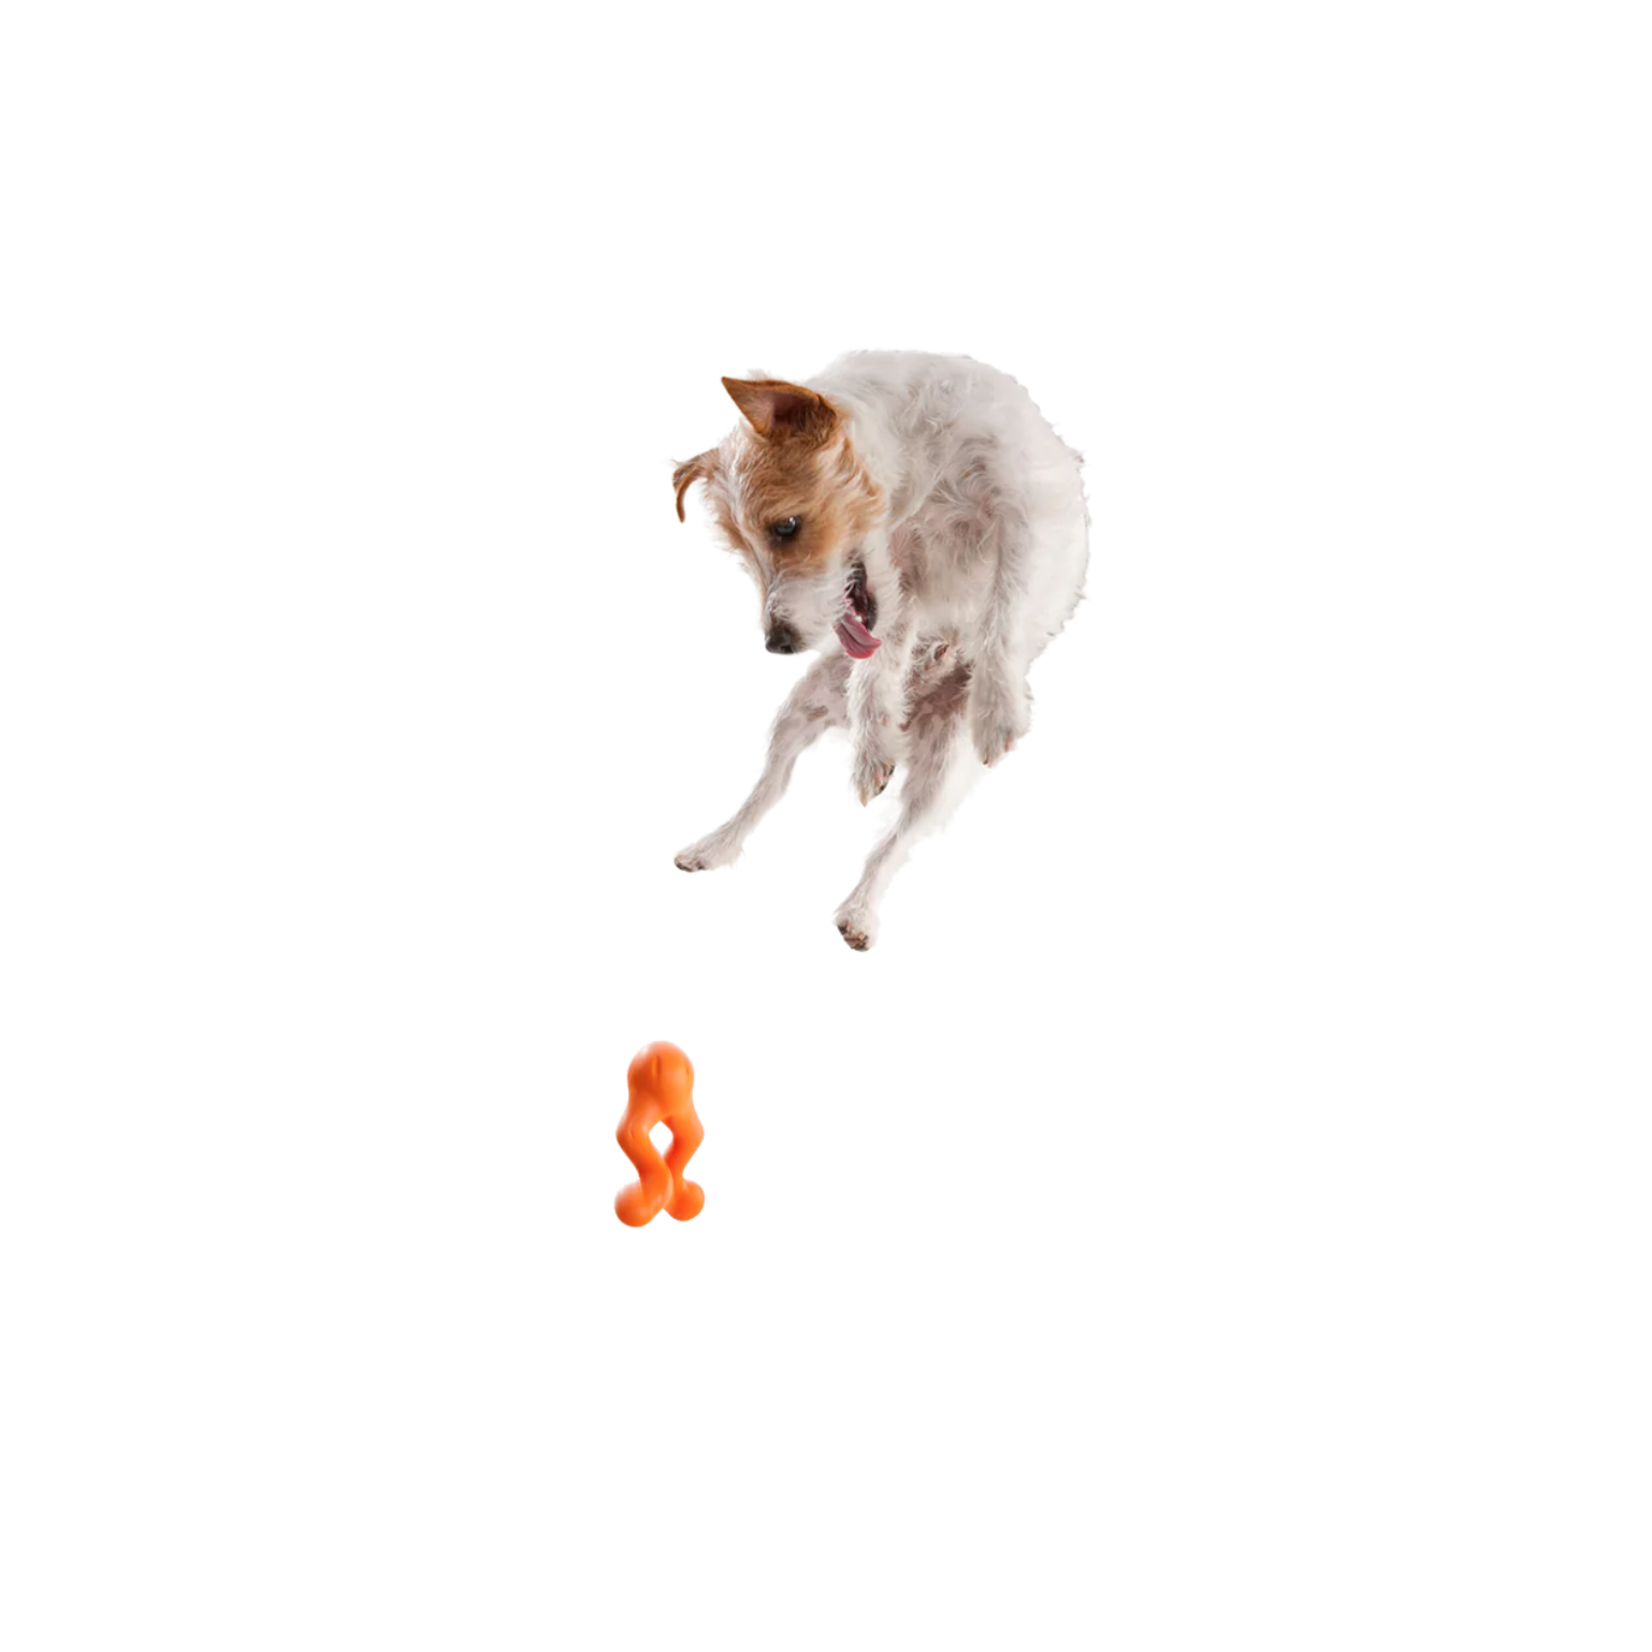 West Paw Tizzi Large 7"- orange dog toy